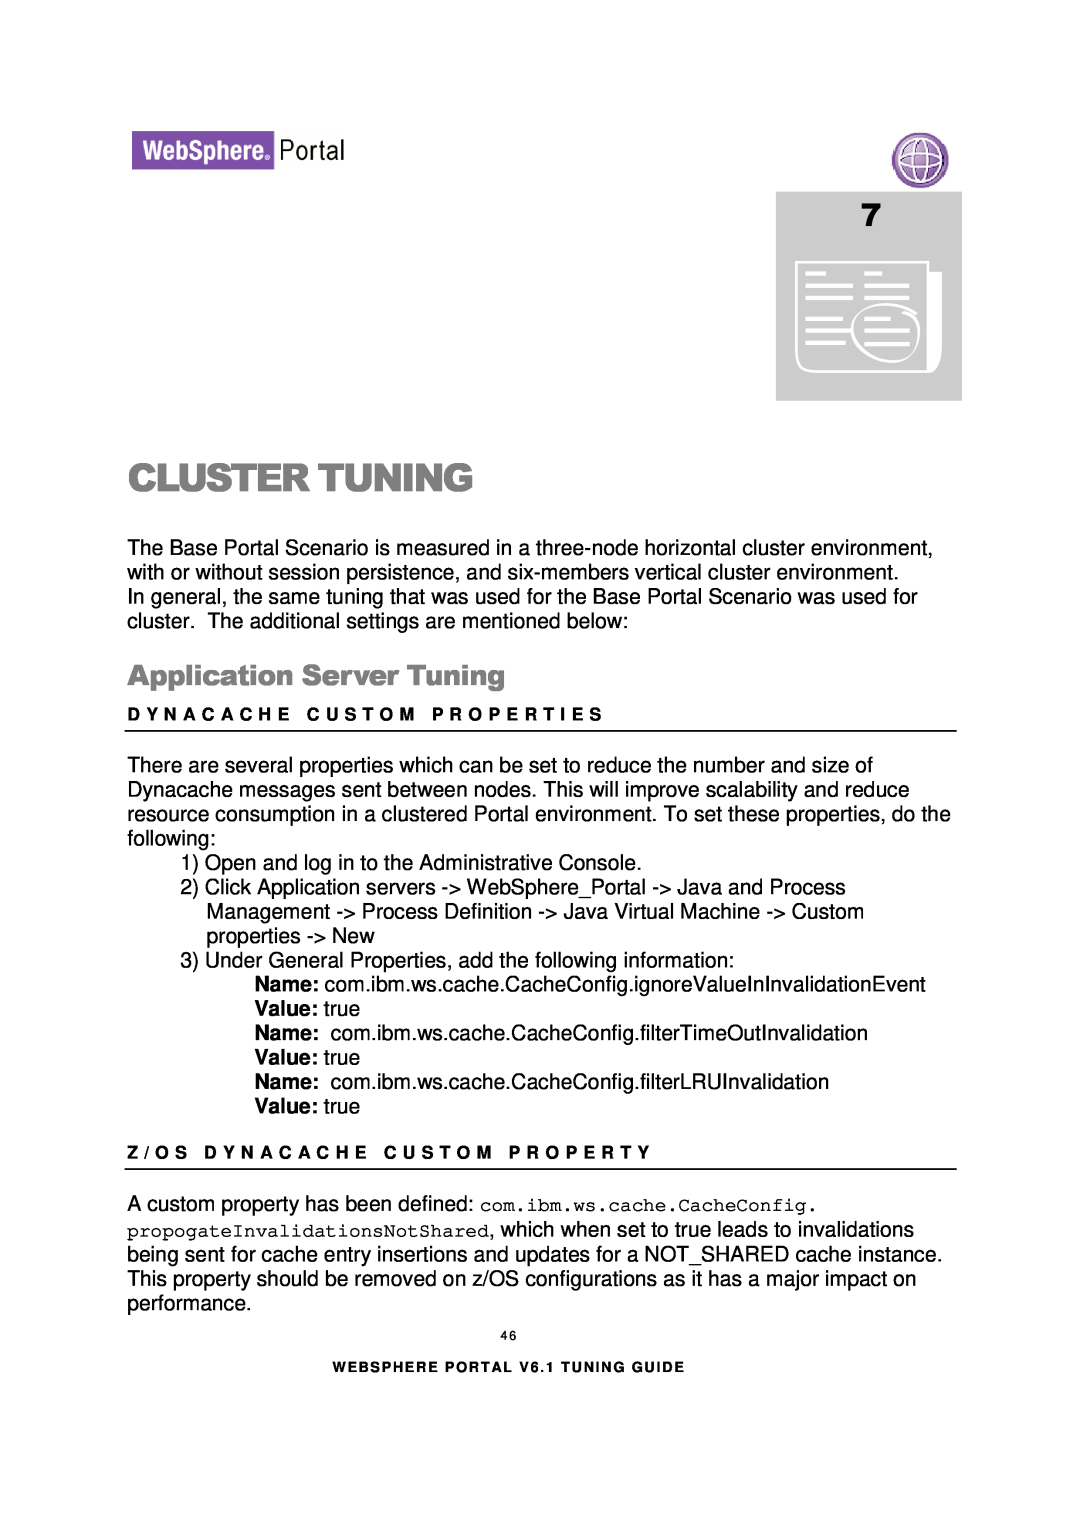 IBM 6.1.X manual Cluster Tuning, Value true, Application Server Tuning 